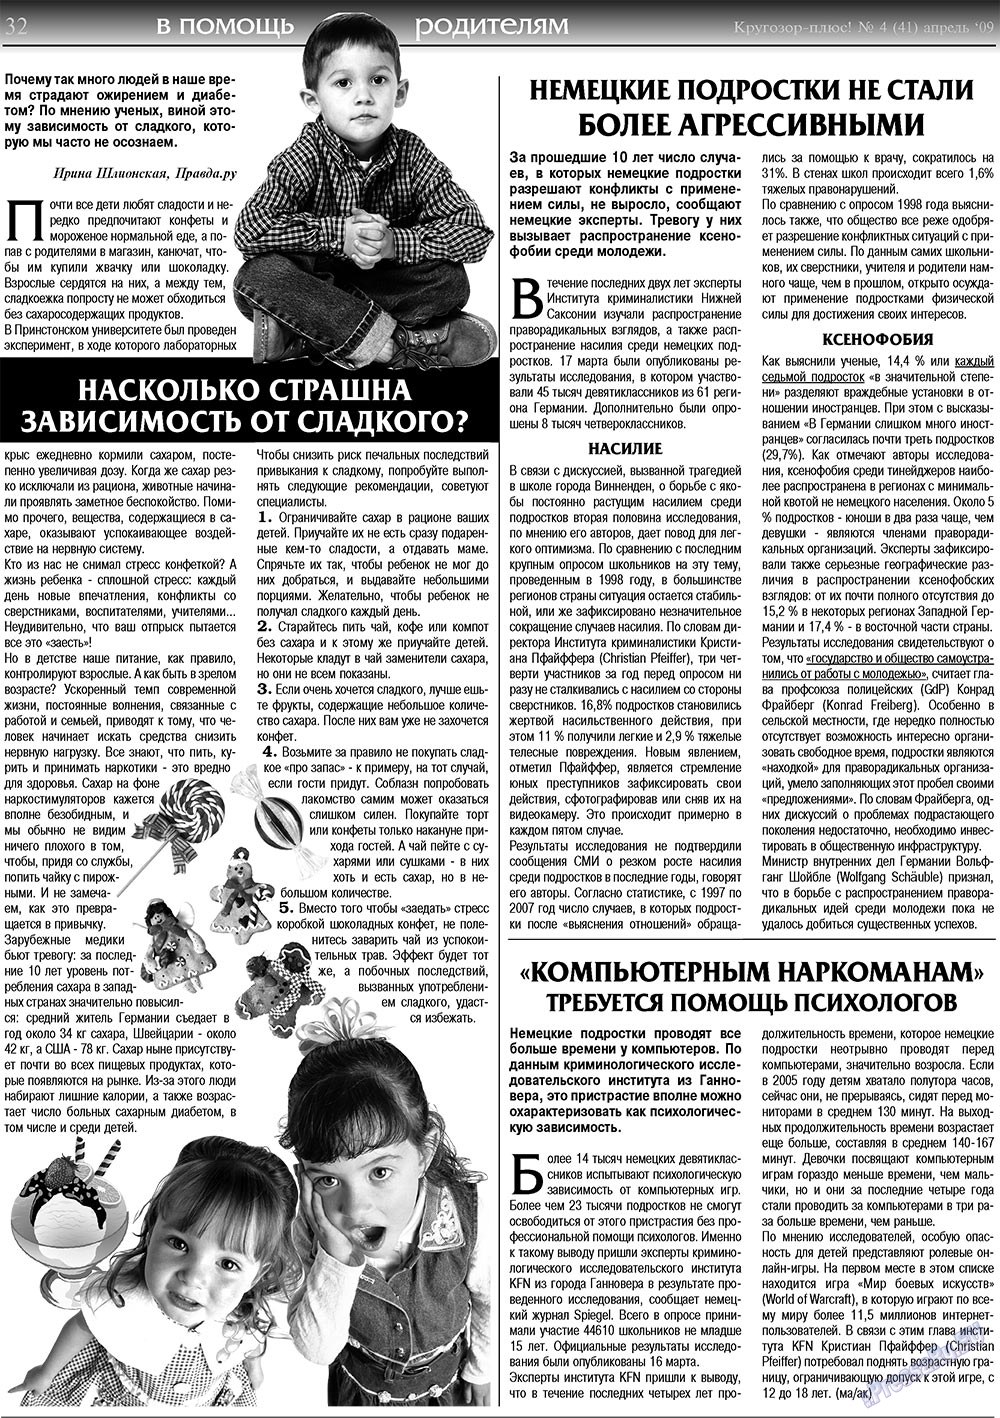 Кругозор плюс!, газета. 2009 №4 стр.32